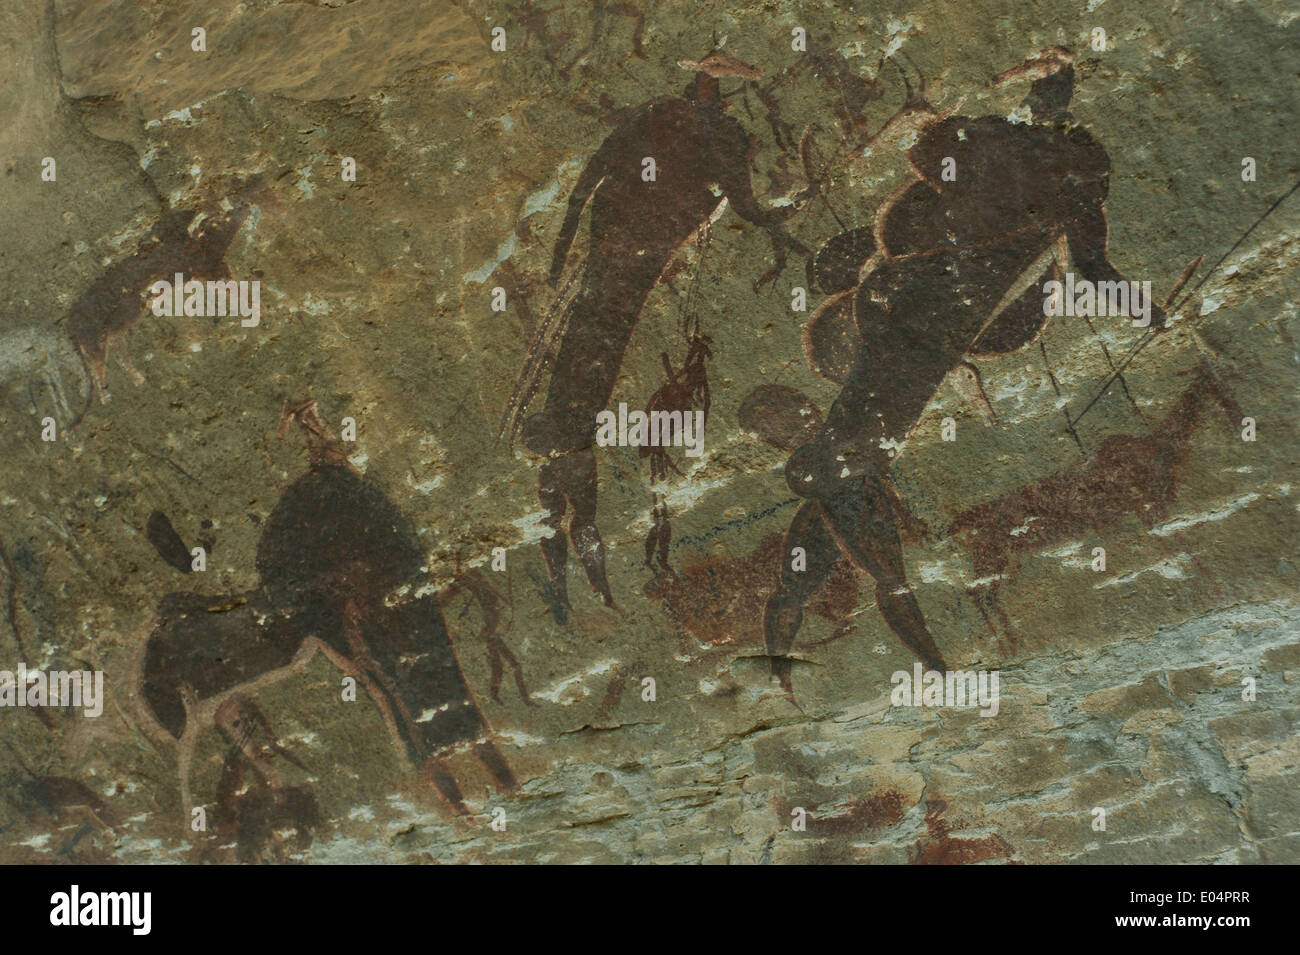 La réserve naturelle du Château des géants, KwaZulu-Natal, Afrique du Sud, héliotropes, résumé, figurines d'art rupestre San Bushman sur Grotte de grès mur, Close up Banque D'Images